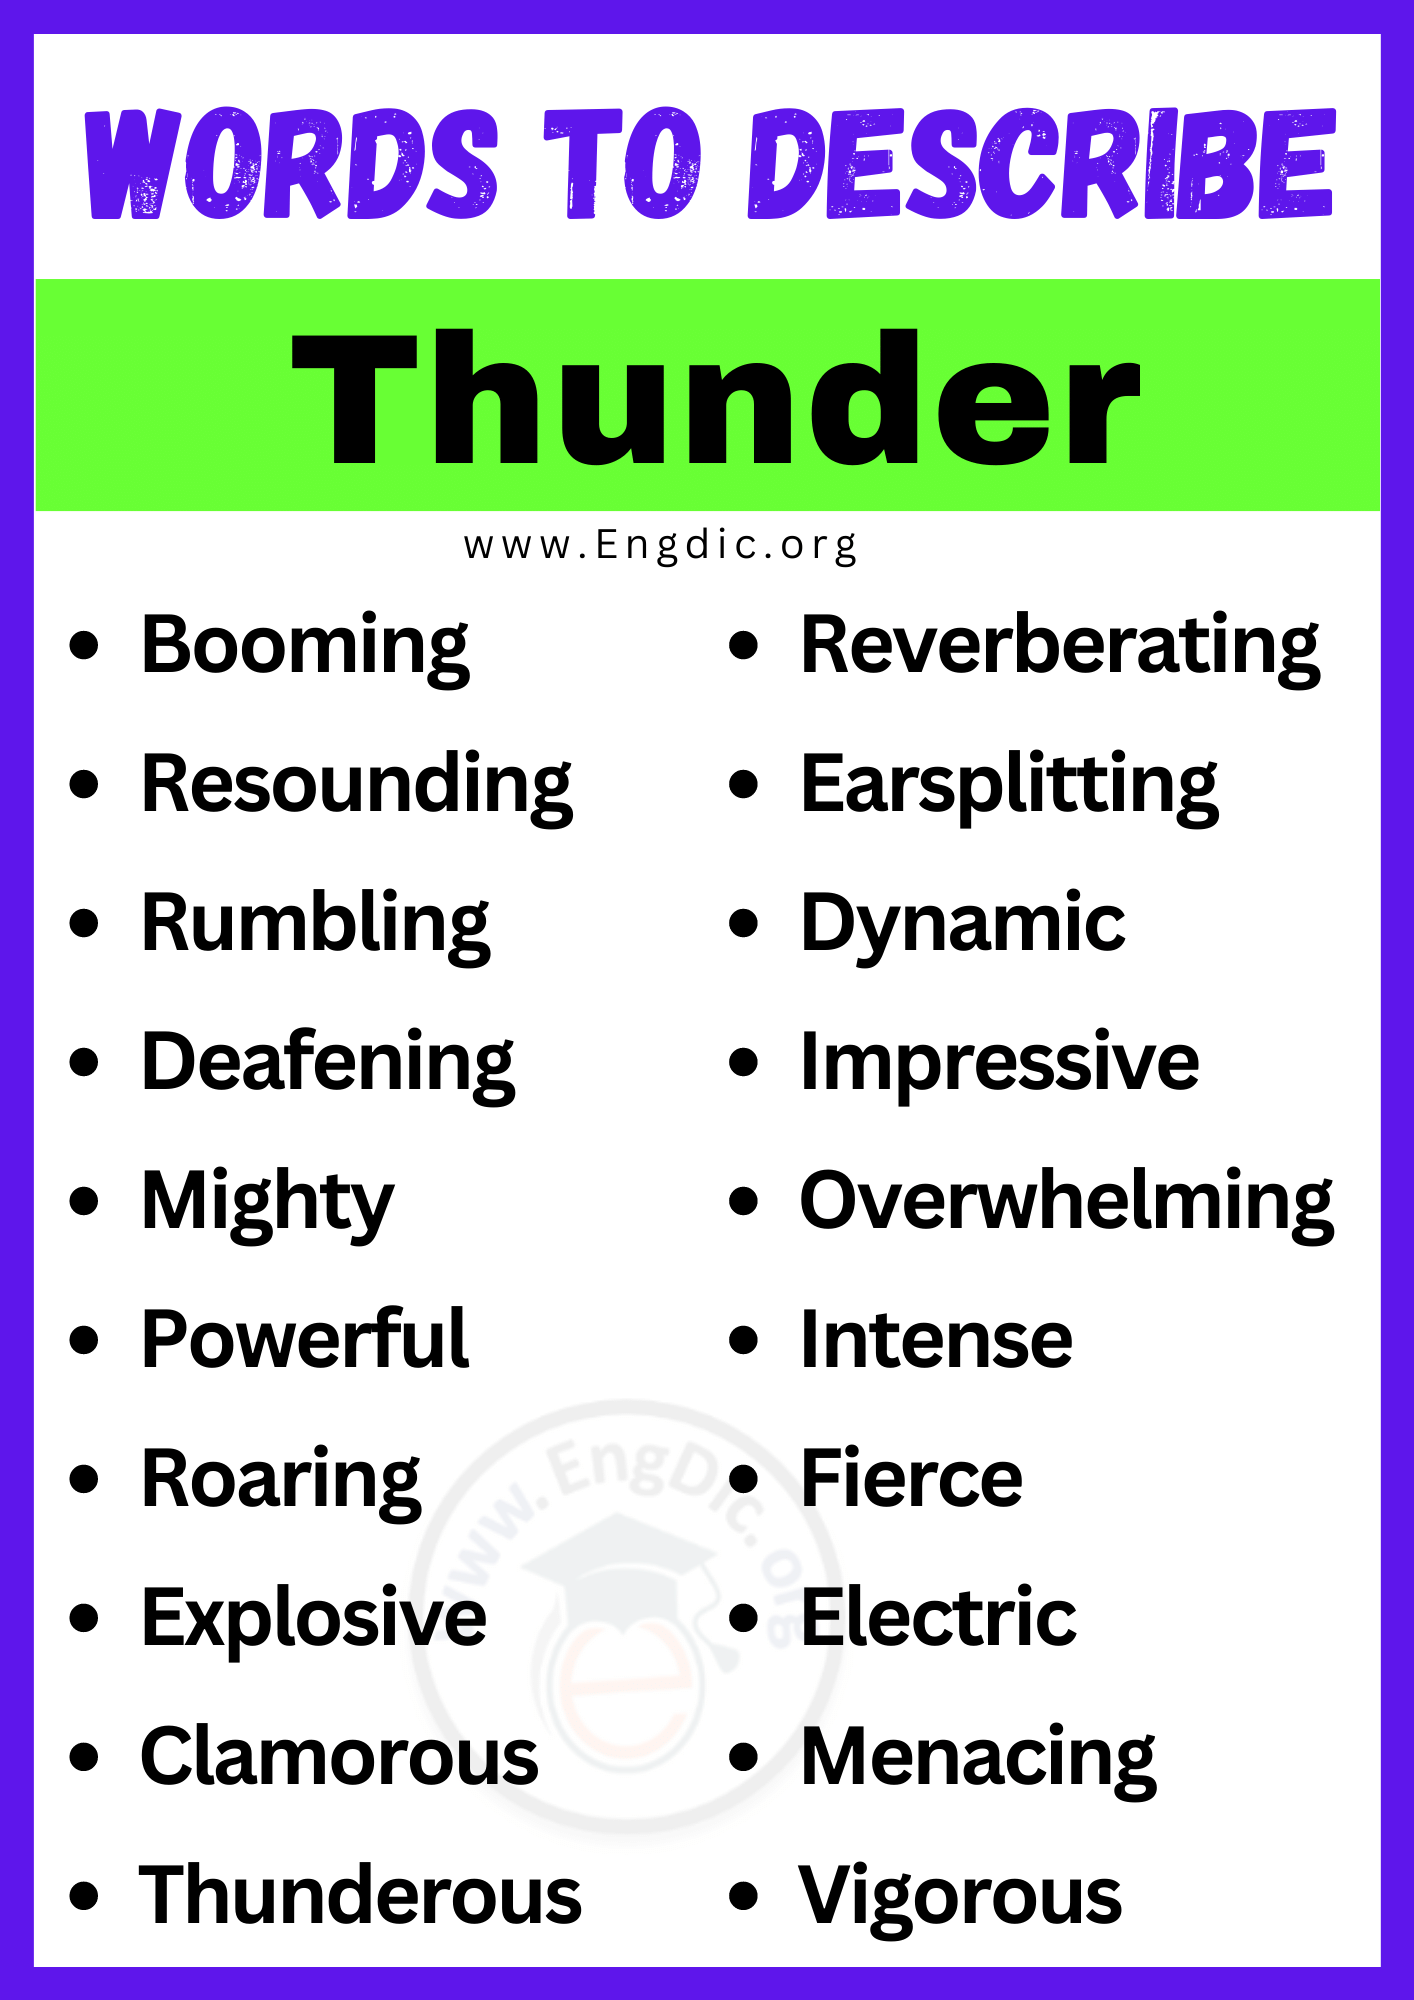 Words to Describe Thunder